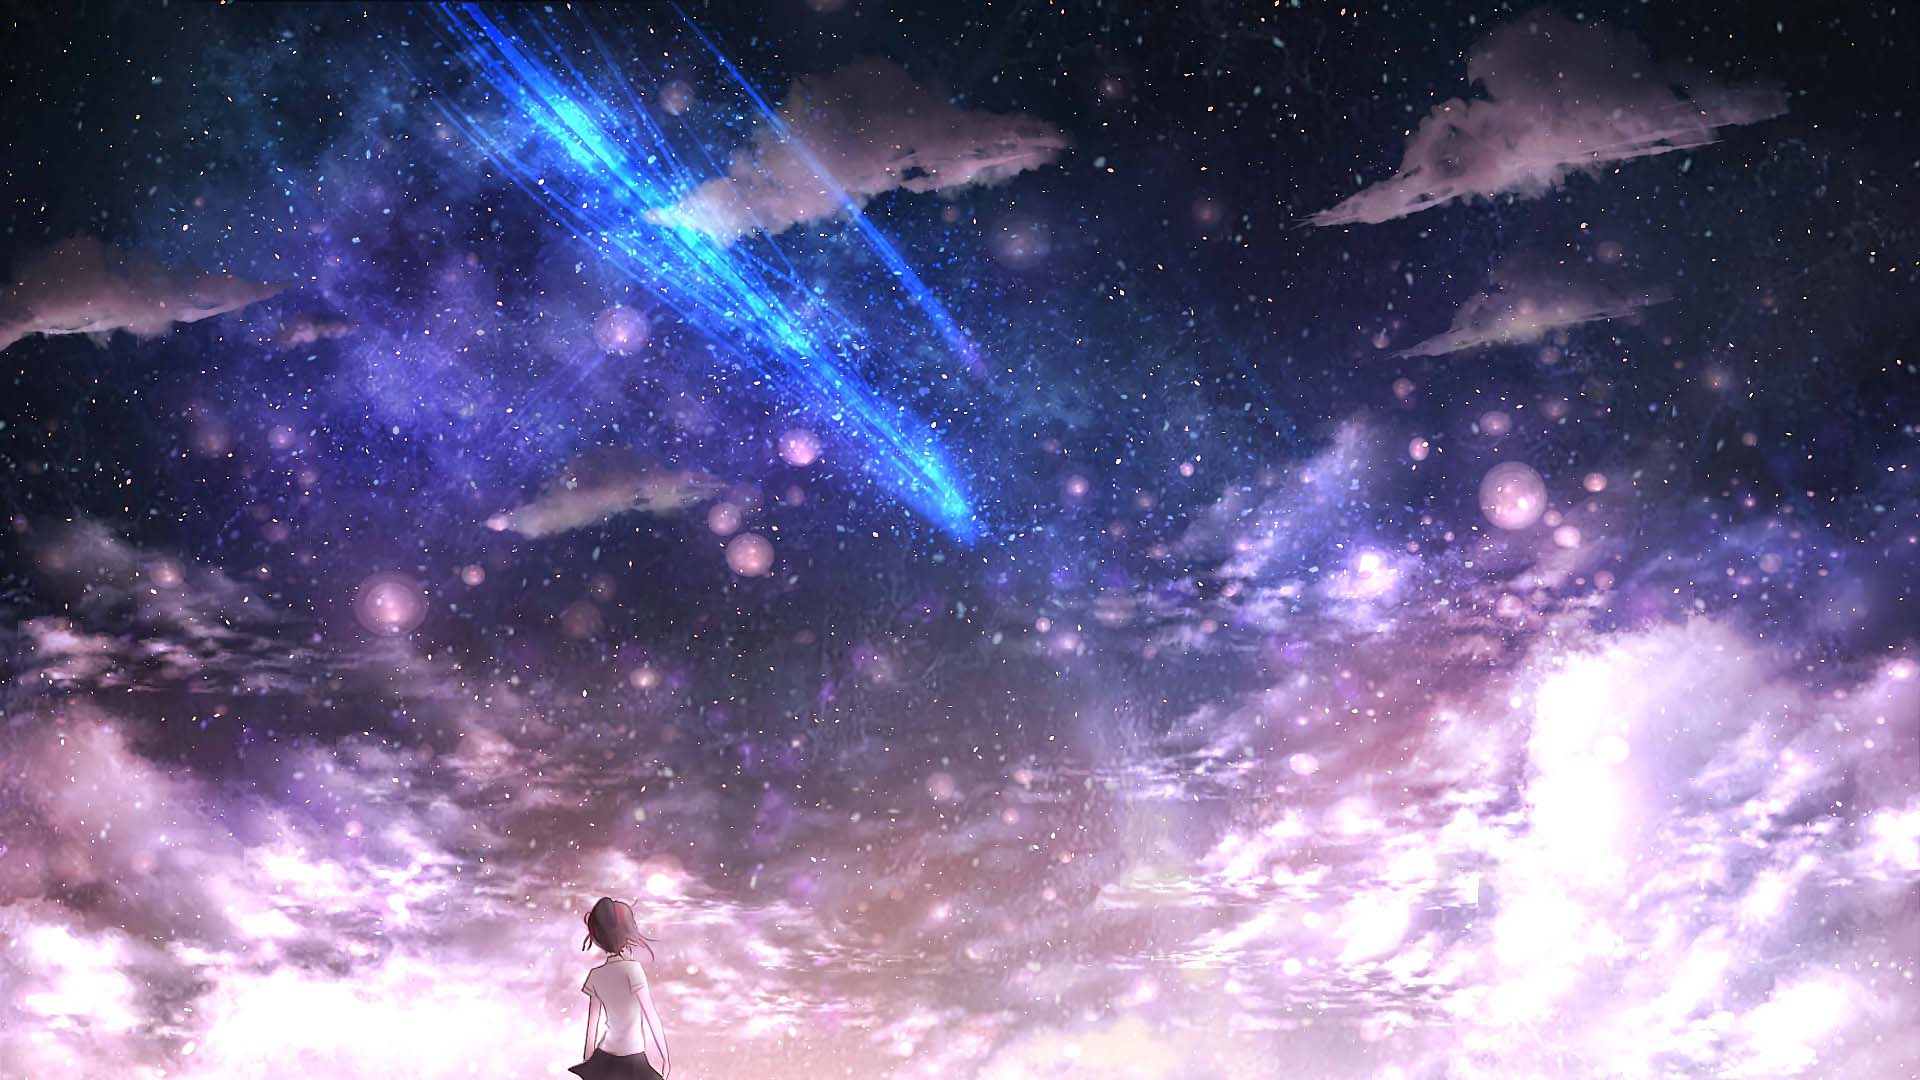 Tổng Hợp Hình ảnh Anime Galaxy Phong Cảnh đẹp Nhất